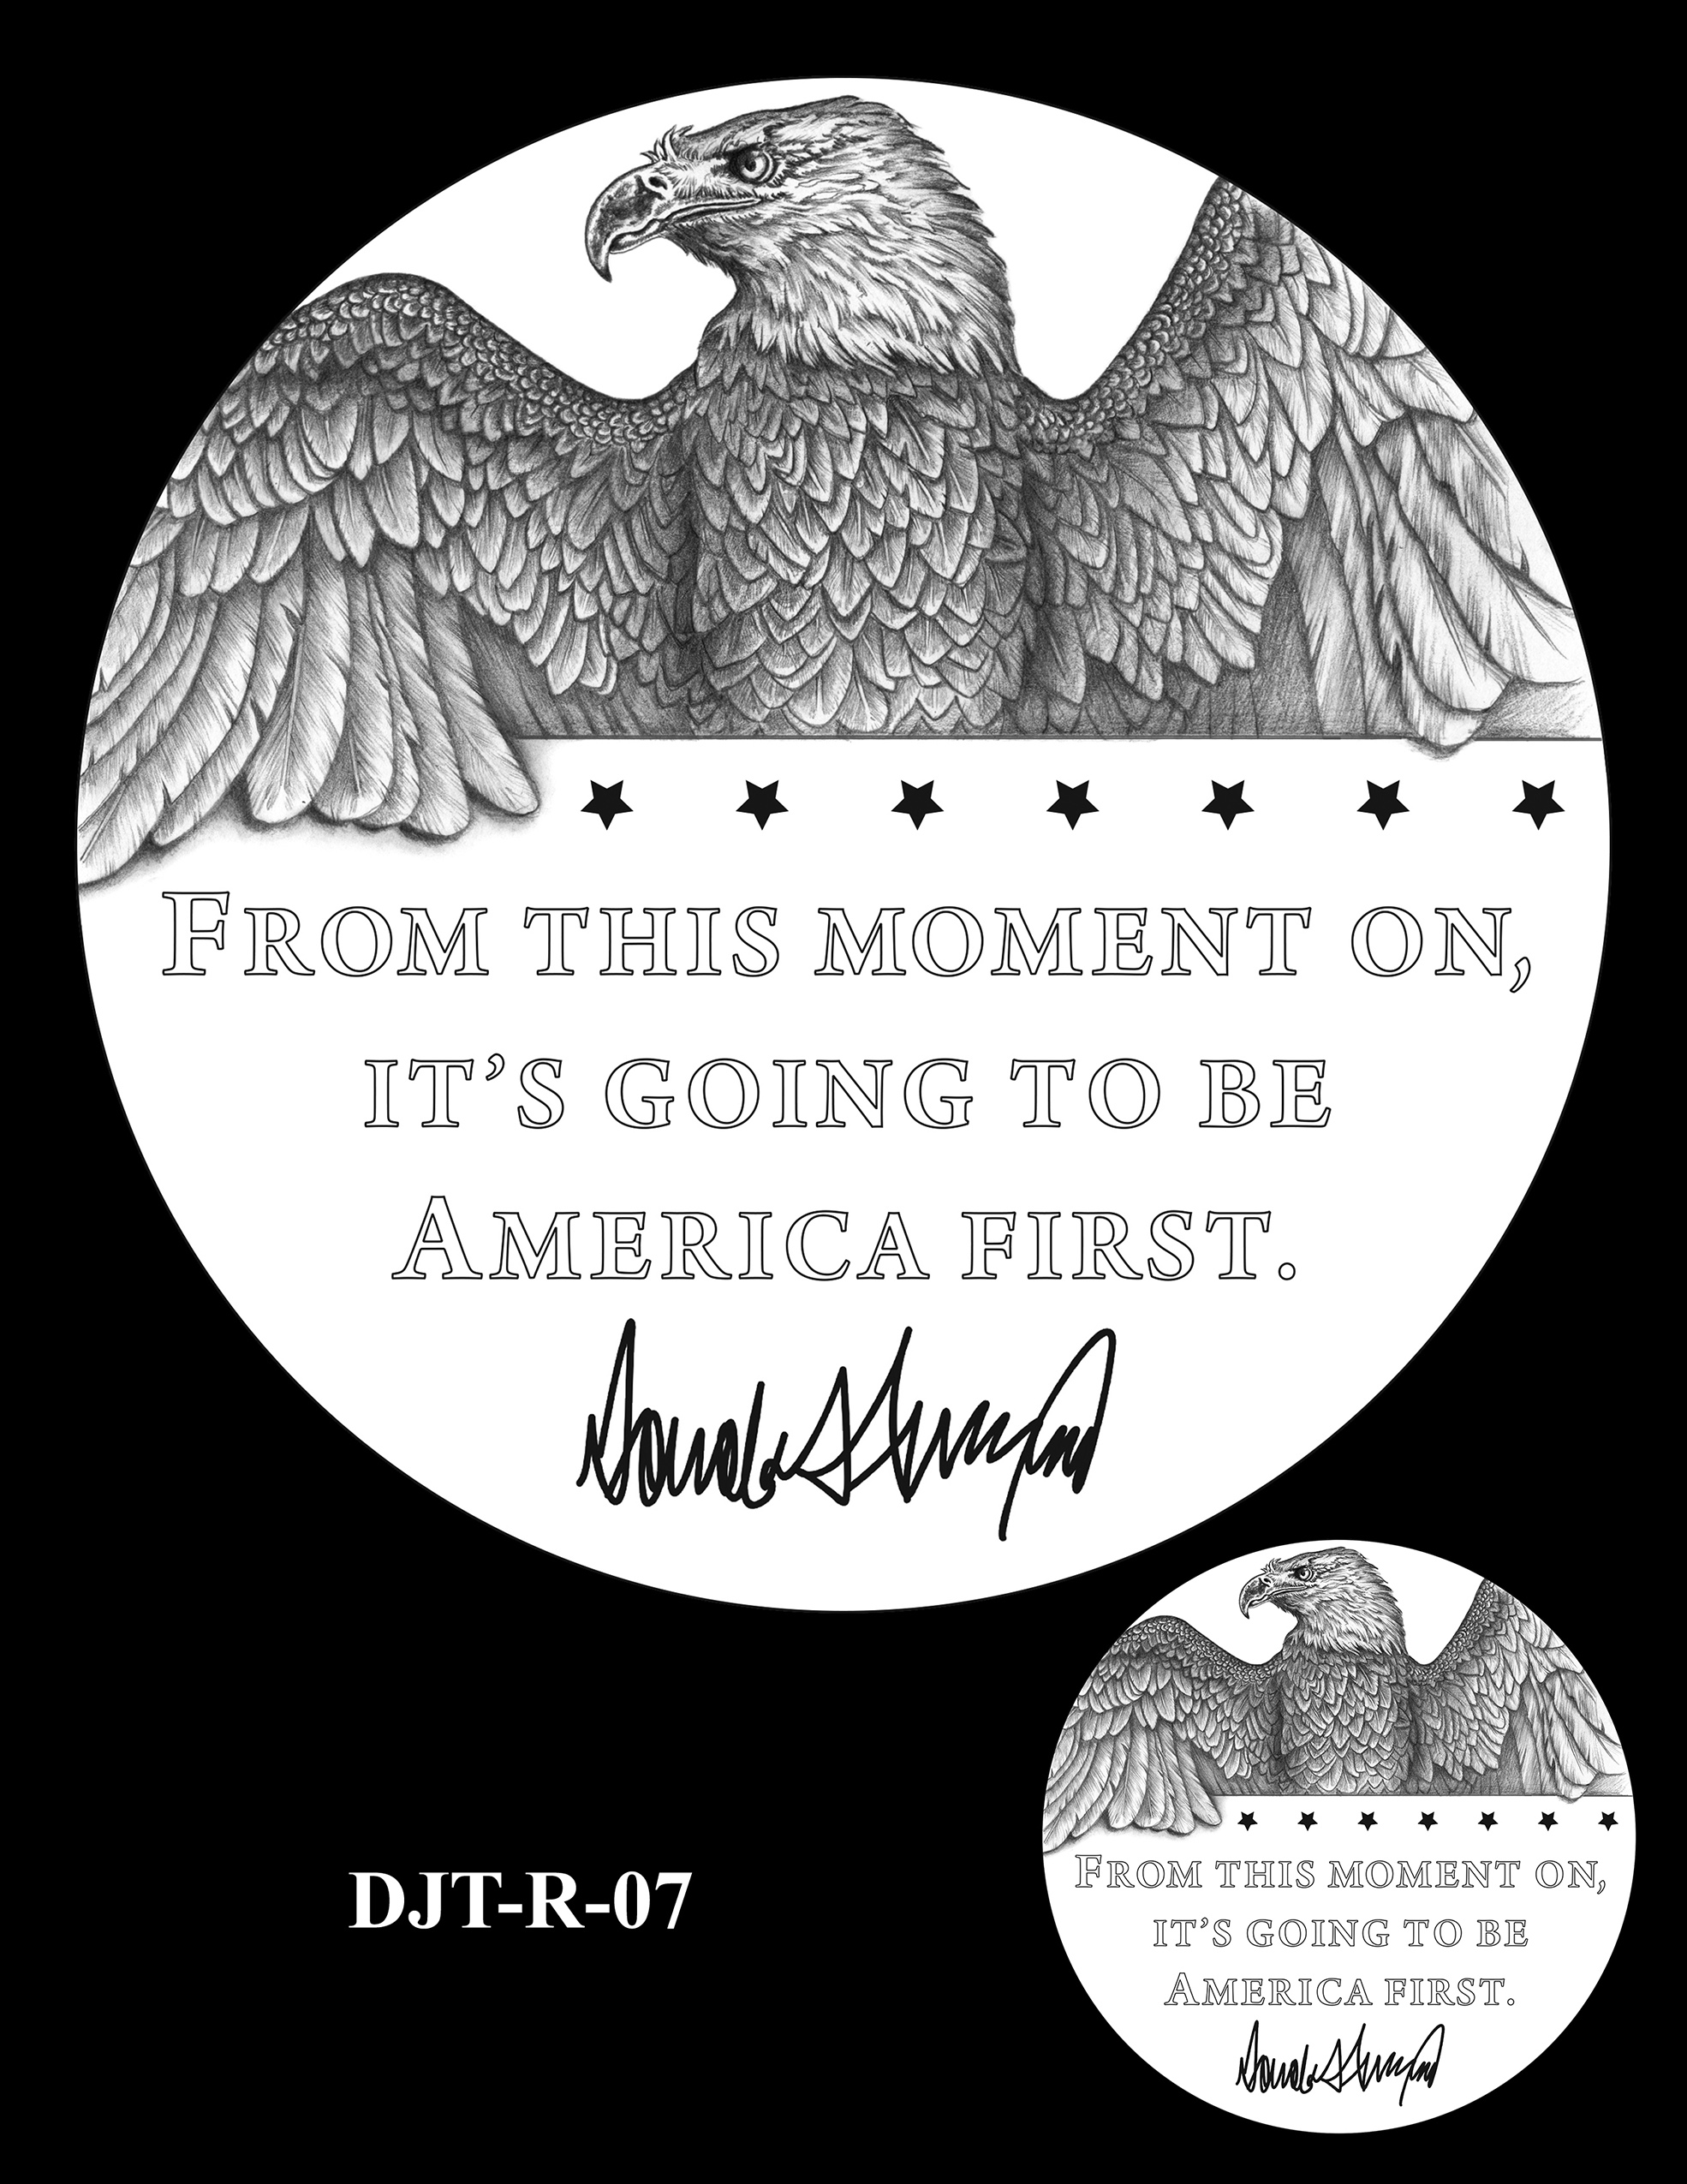 DJT-R-07 -- Donald J. Trump Presidential Medal